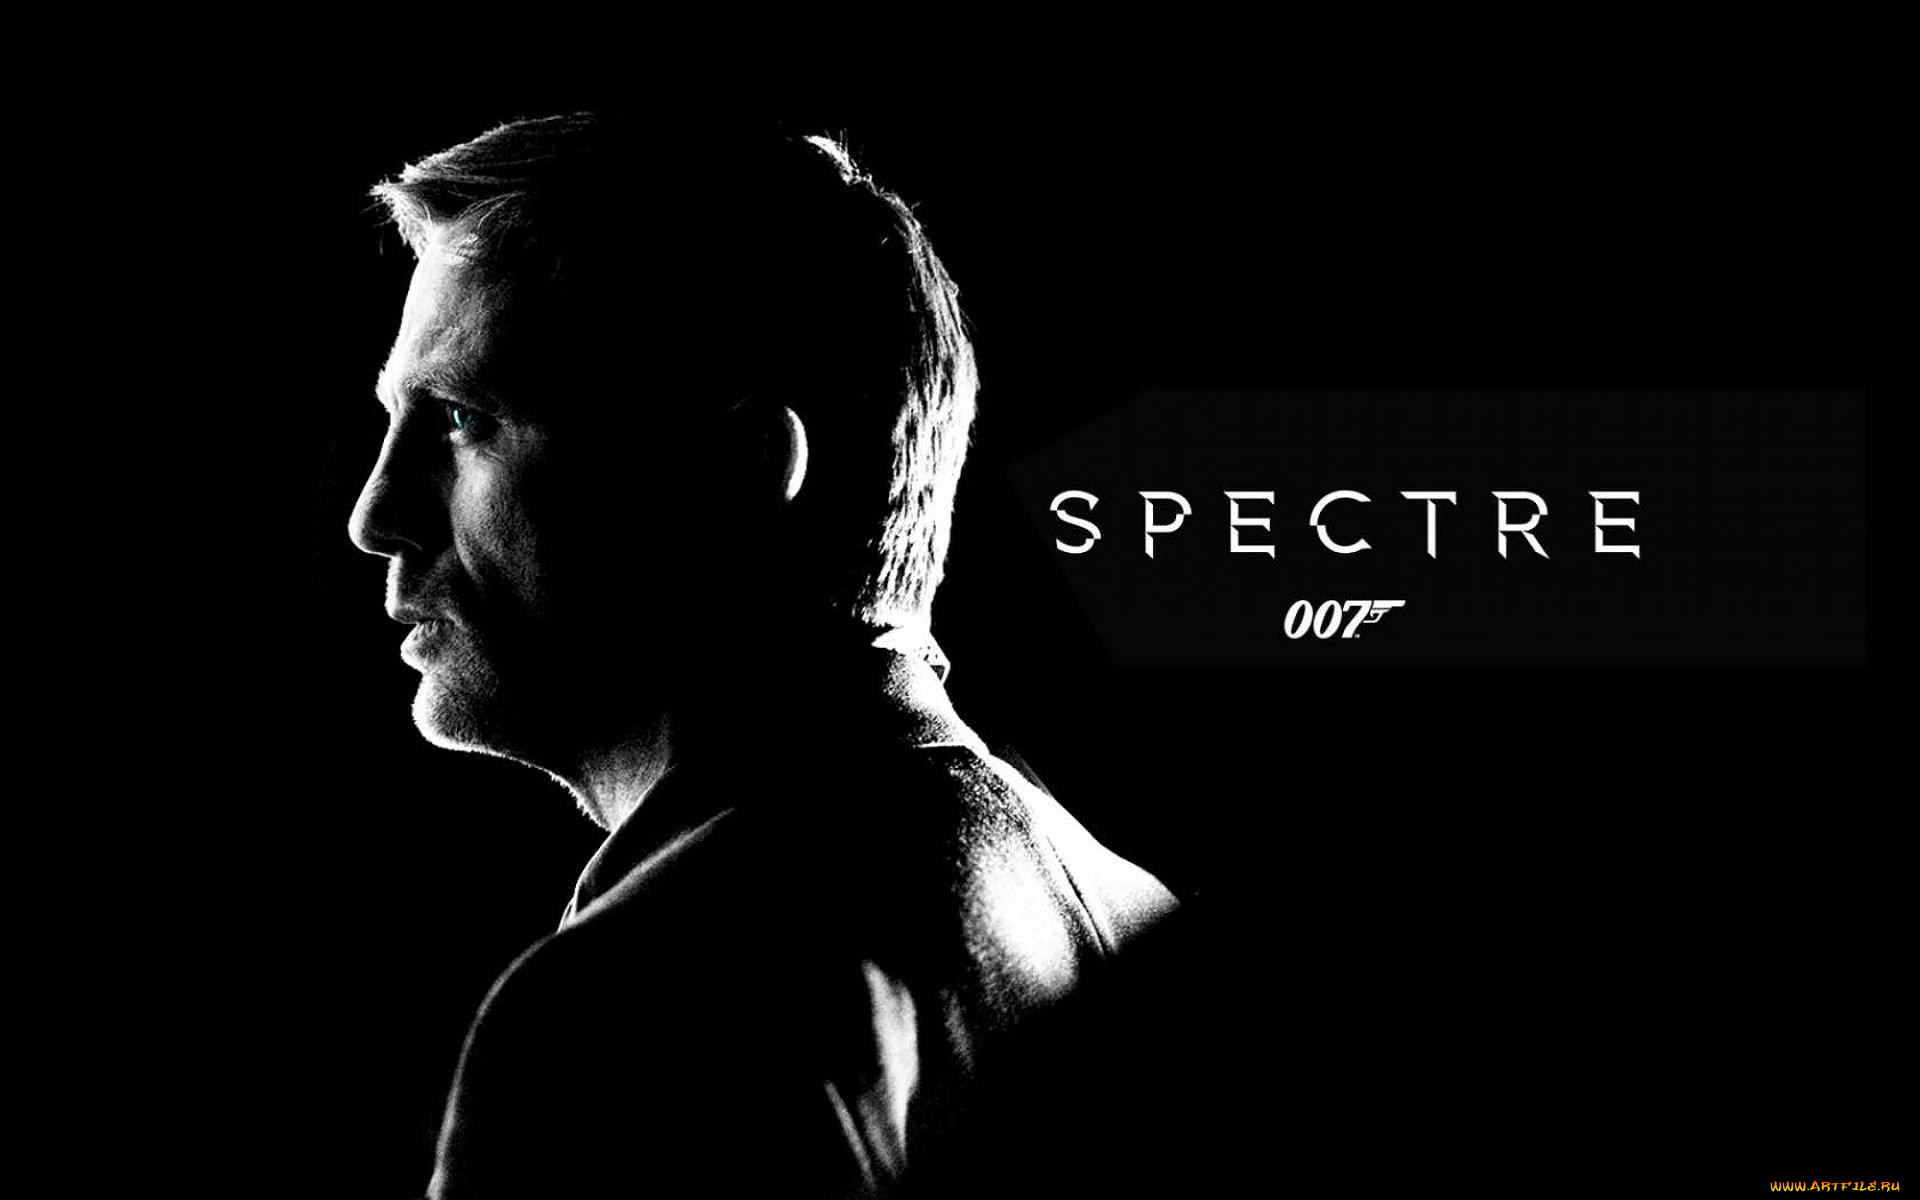  , 007,  spectre, , , 